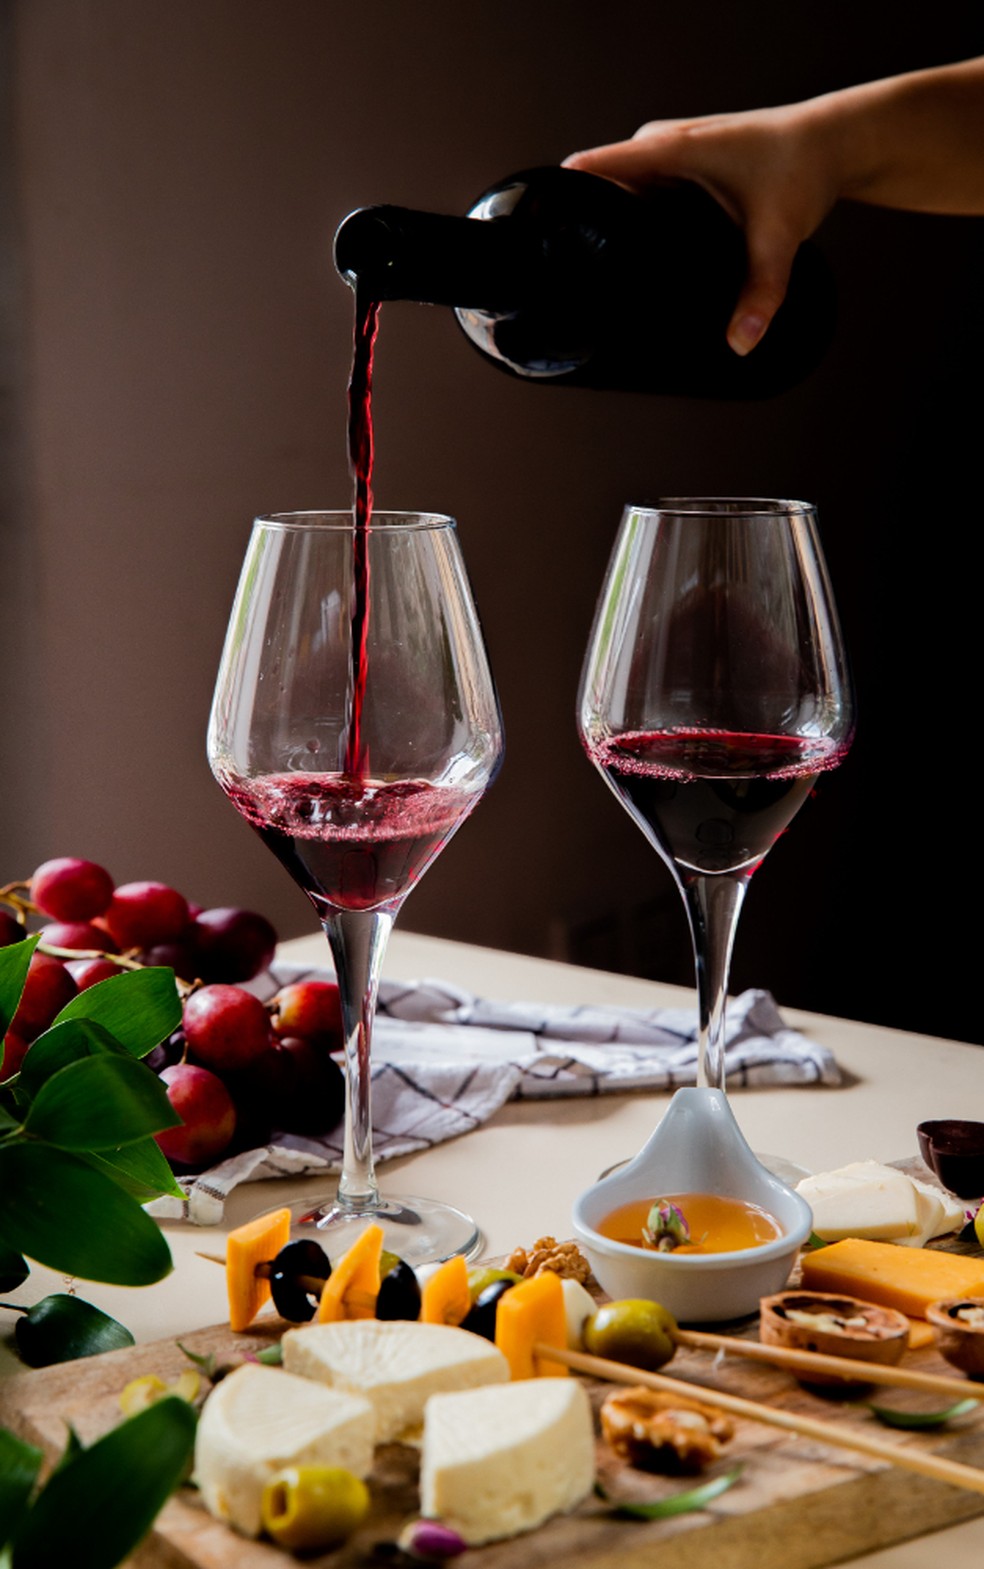 A comparação entre dois rótulos é a melhor forma de aprender a identificar aromas no vinho — Foto: Freepik / Creative Commons